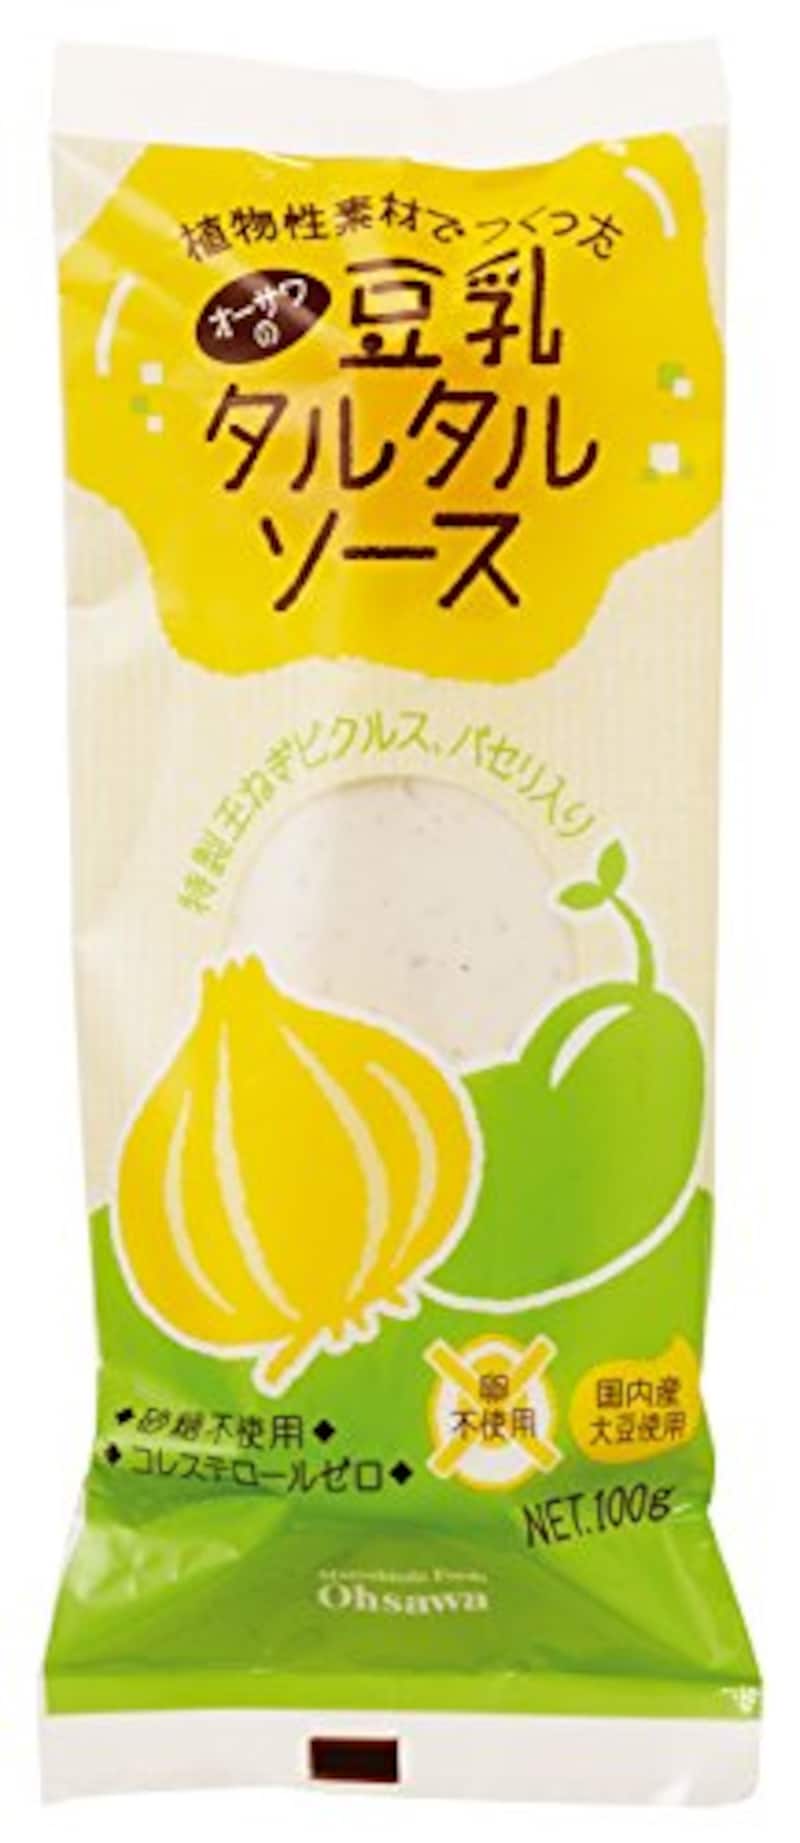 オーサワジャパン,豆乳タルタルソース